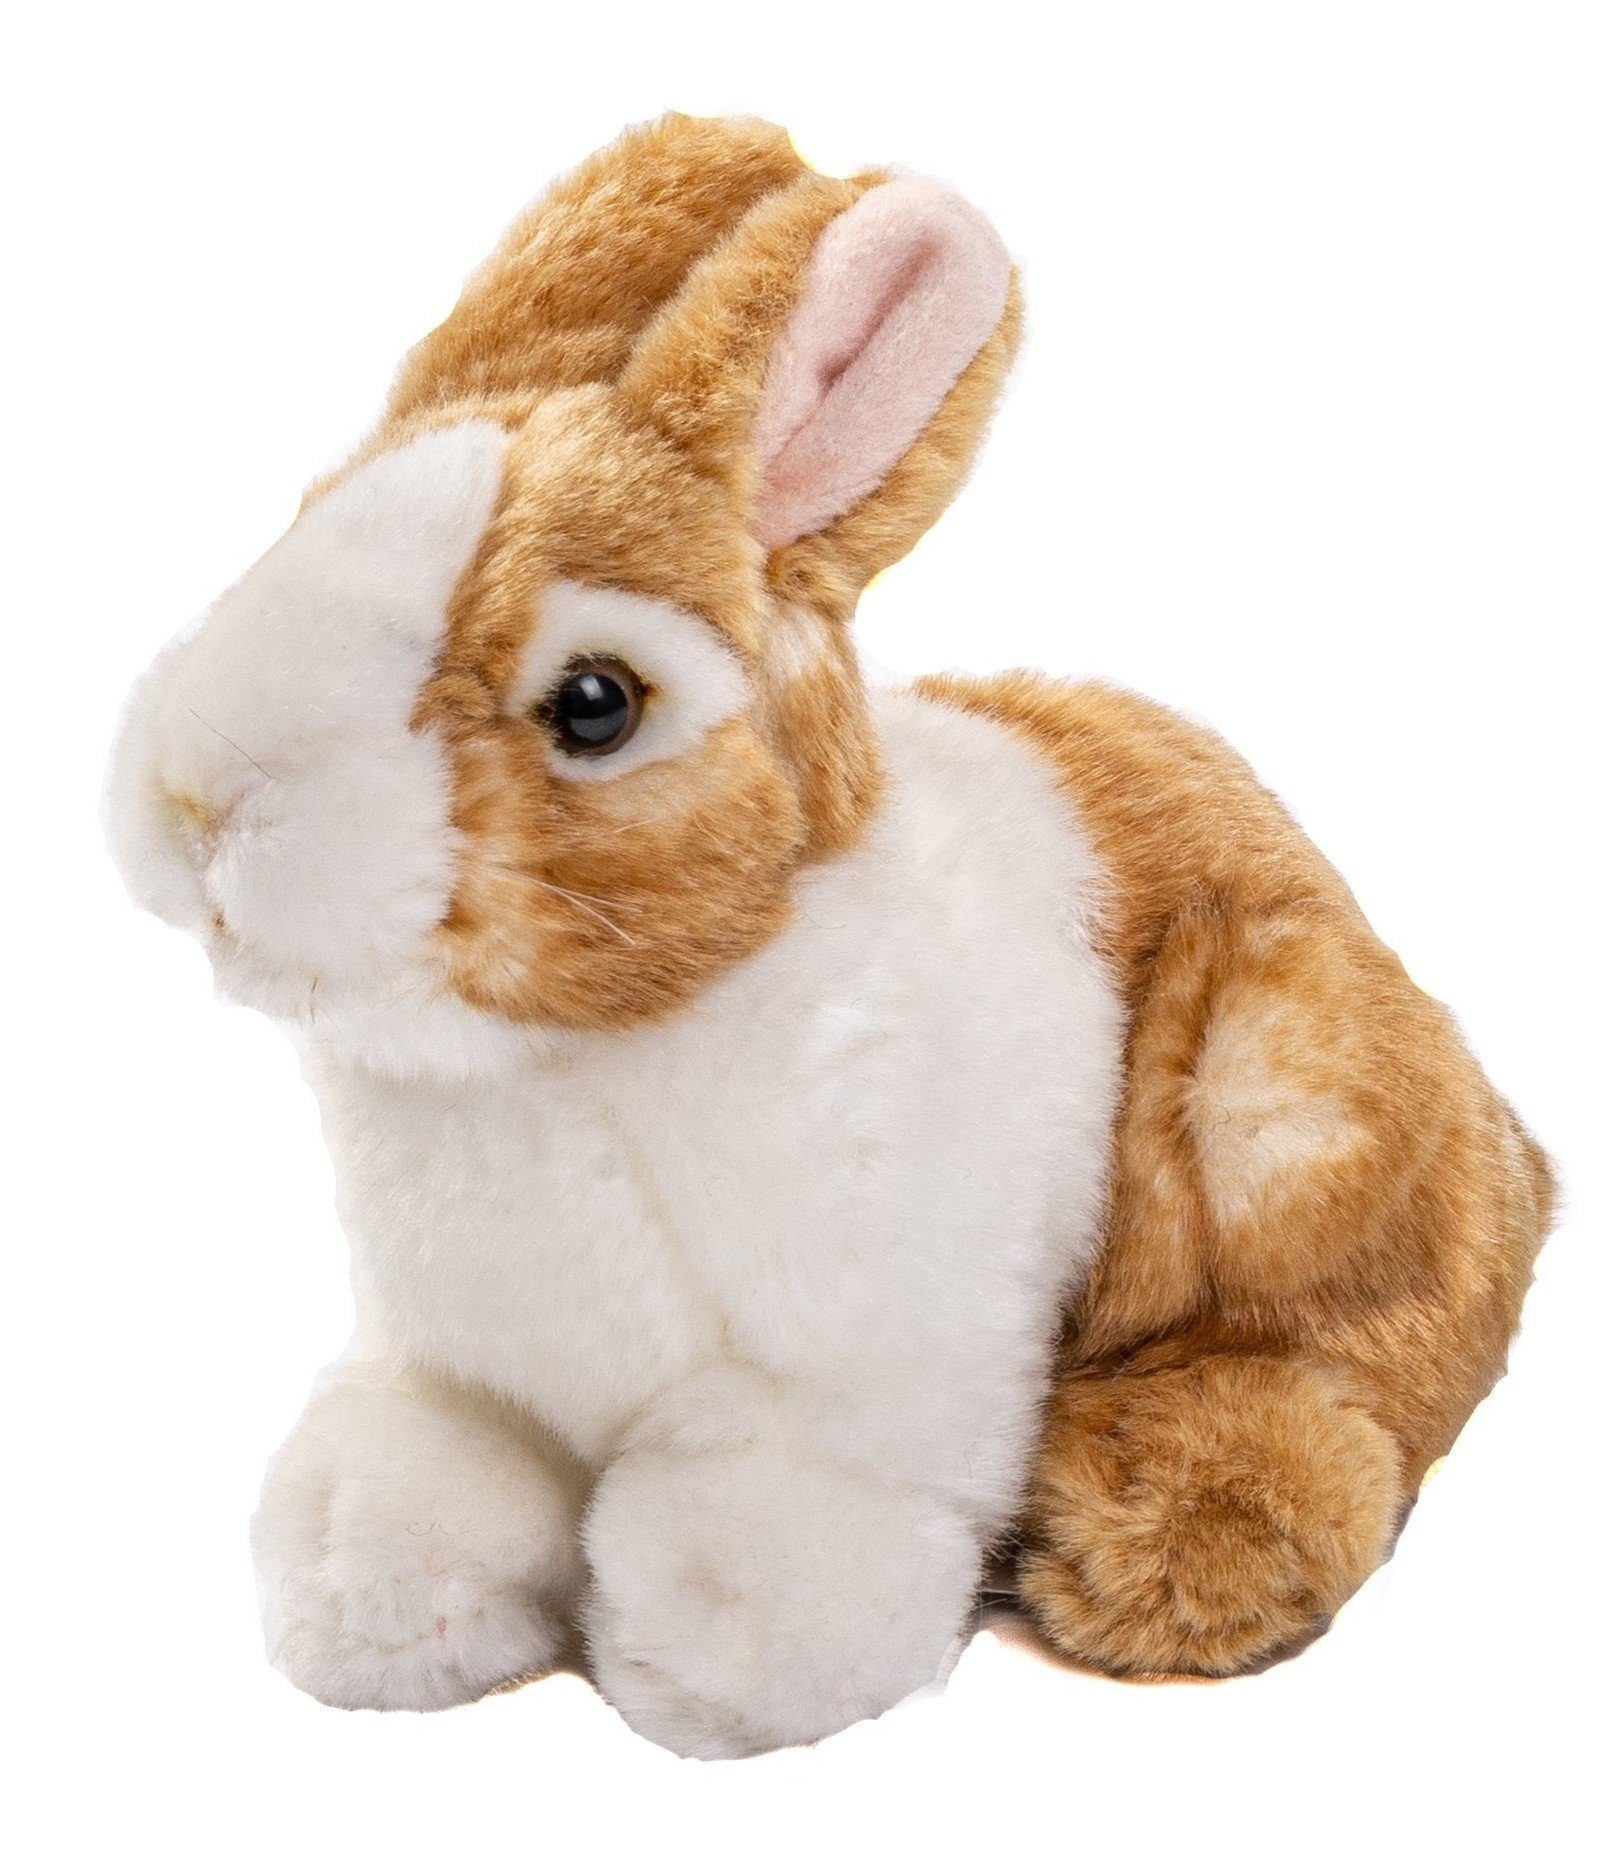 Uni-Toys Kuscheltier Kaninchen, sitzend - grau oder braun - 20 cm - Plüsch-Hase, Plüschtier, zu 100 % recyceltes Füllmaterial braun-weiß